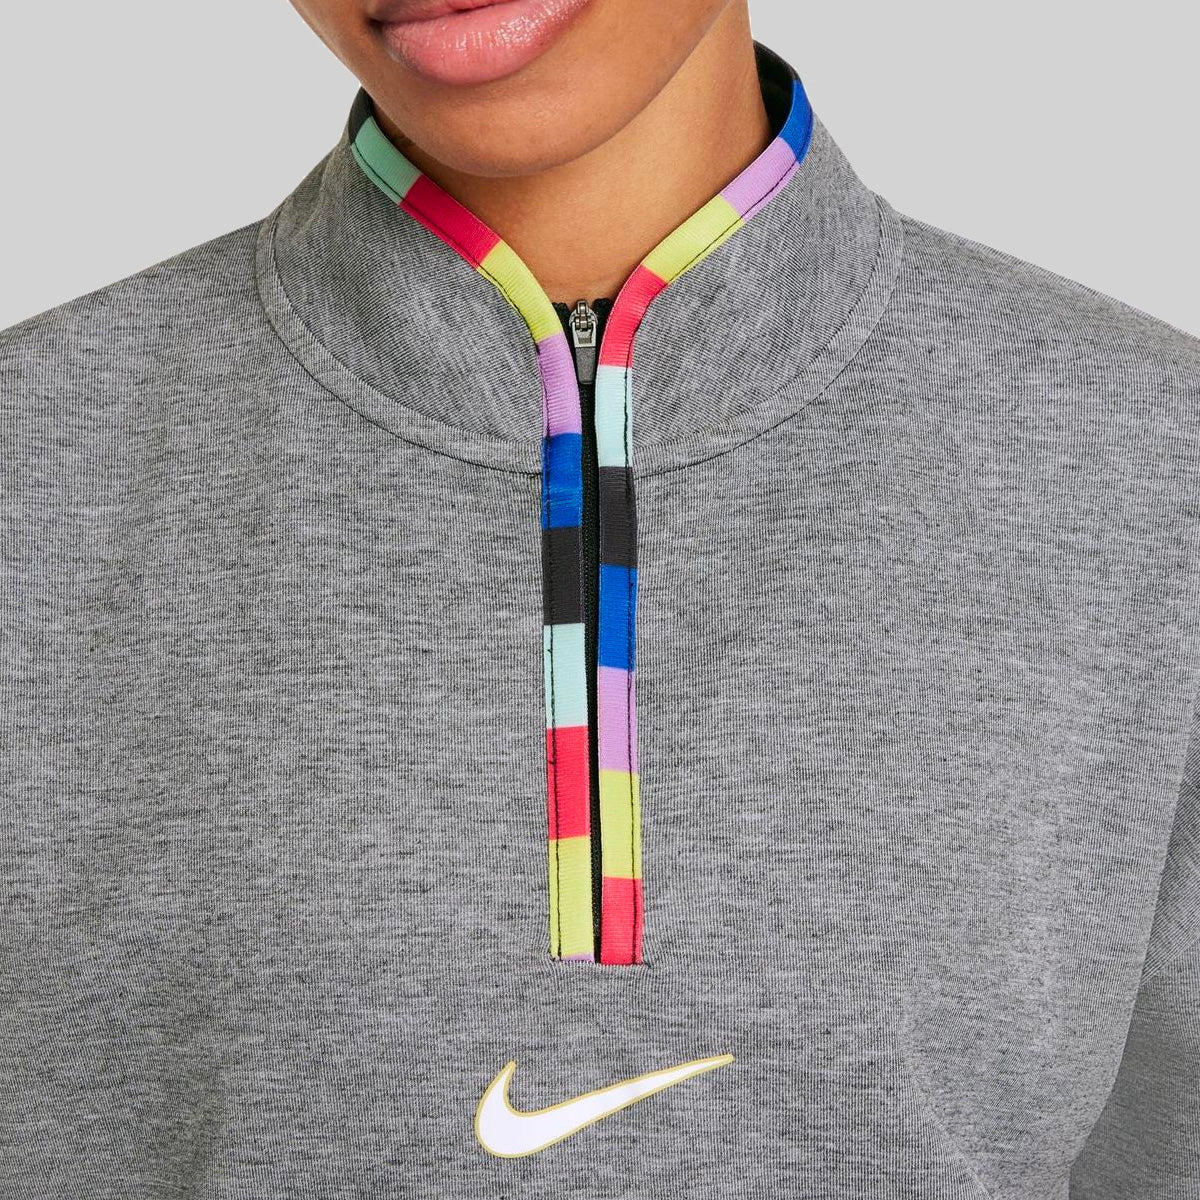 Womens Nike DriFit Joga Bonito Quarter Zip